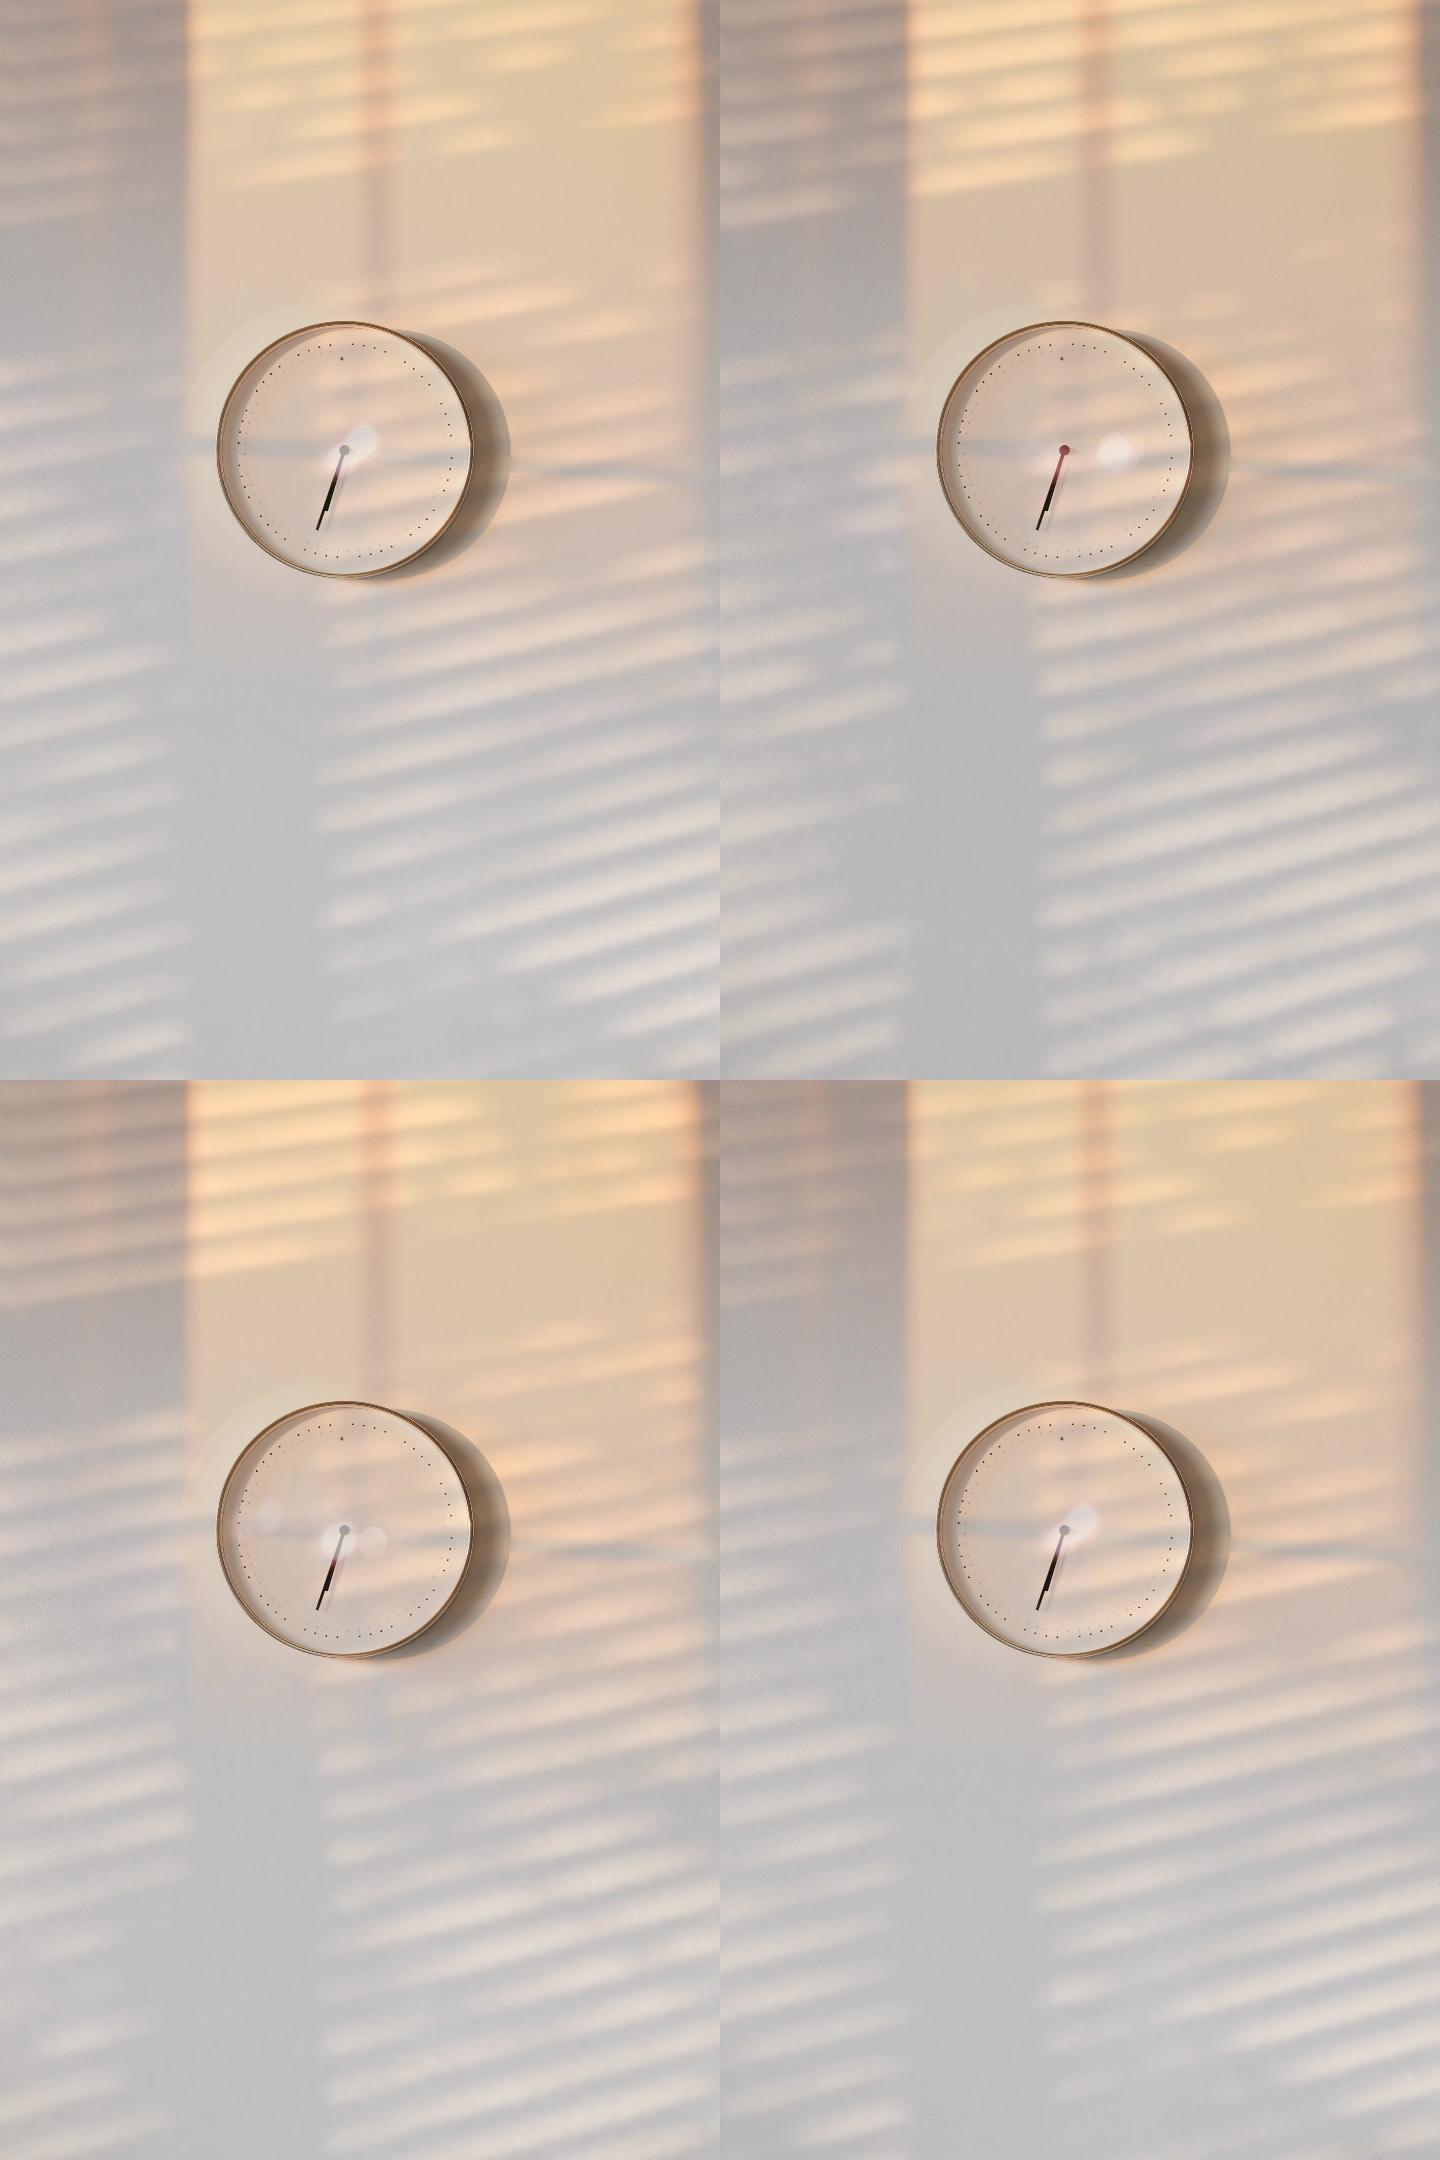 阳光照入房间墙上的时钟